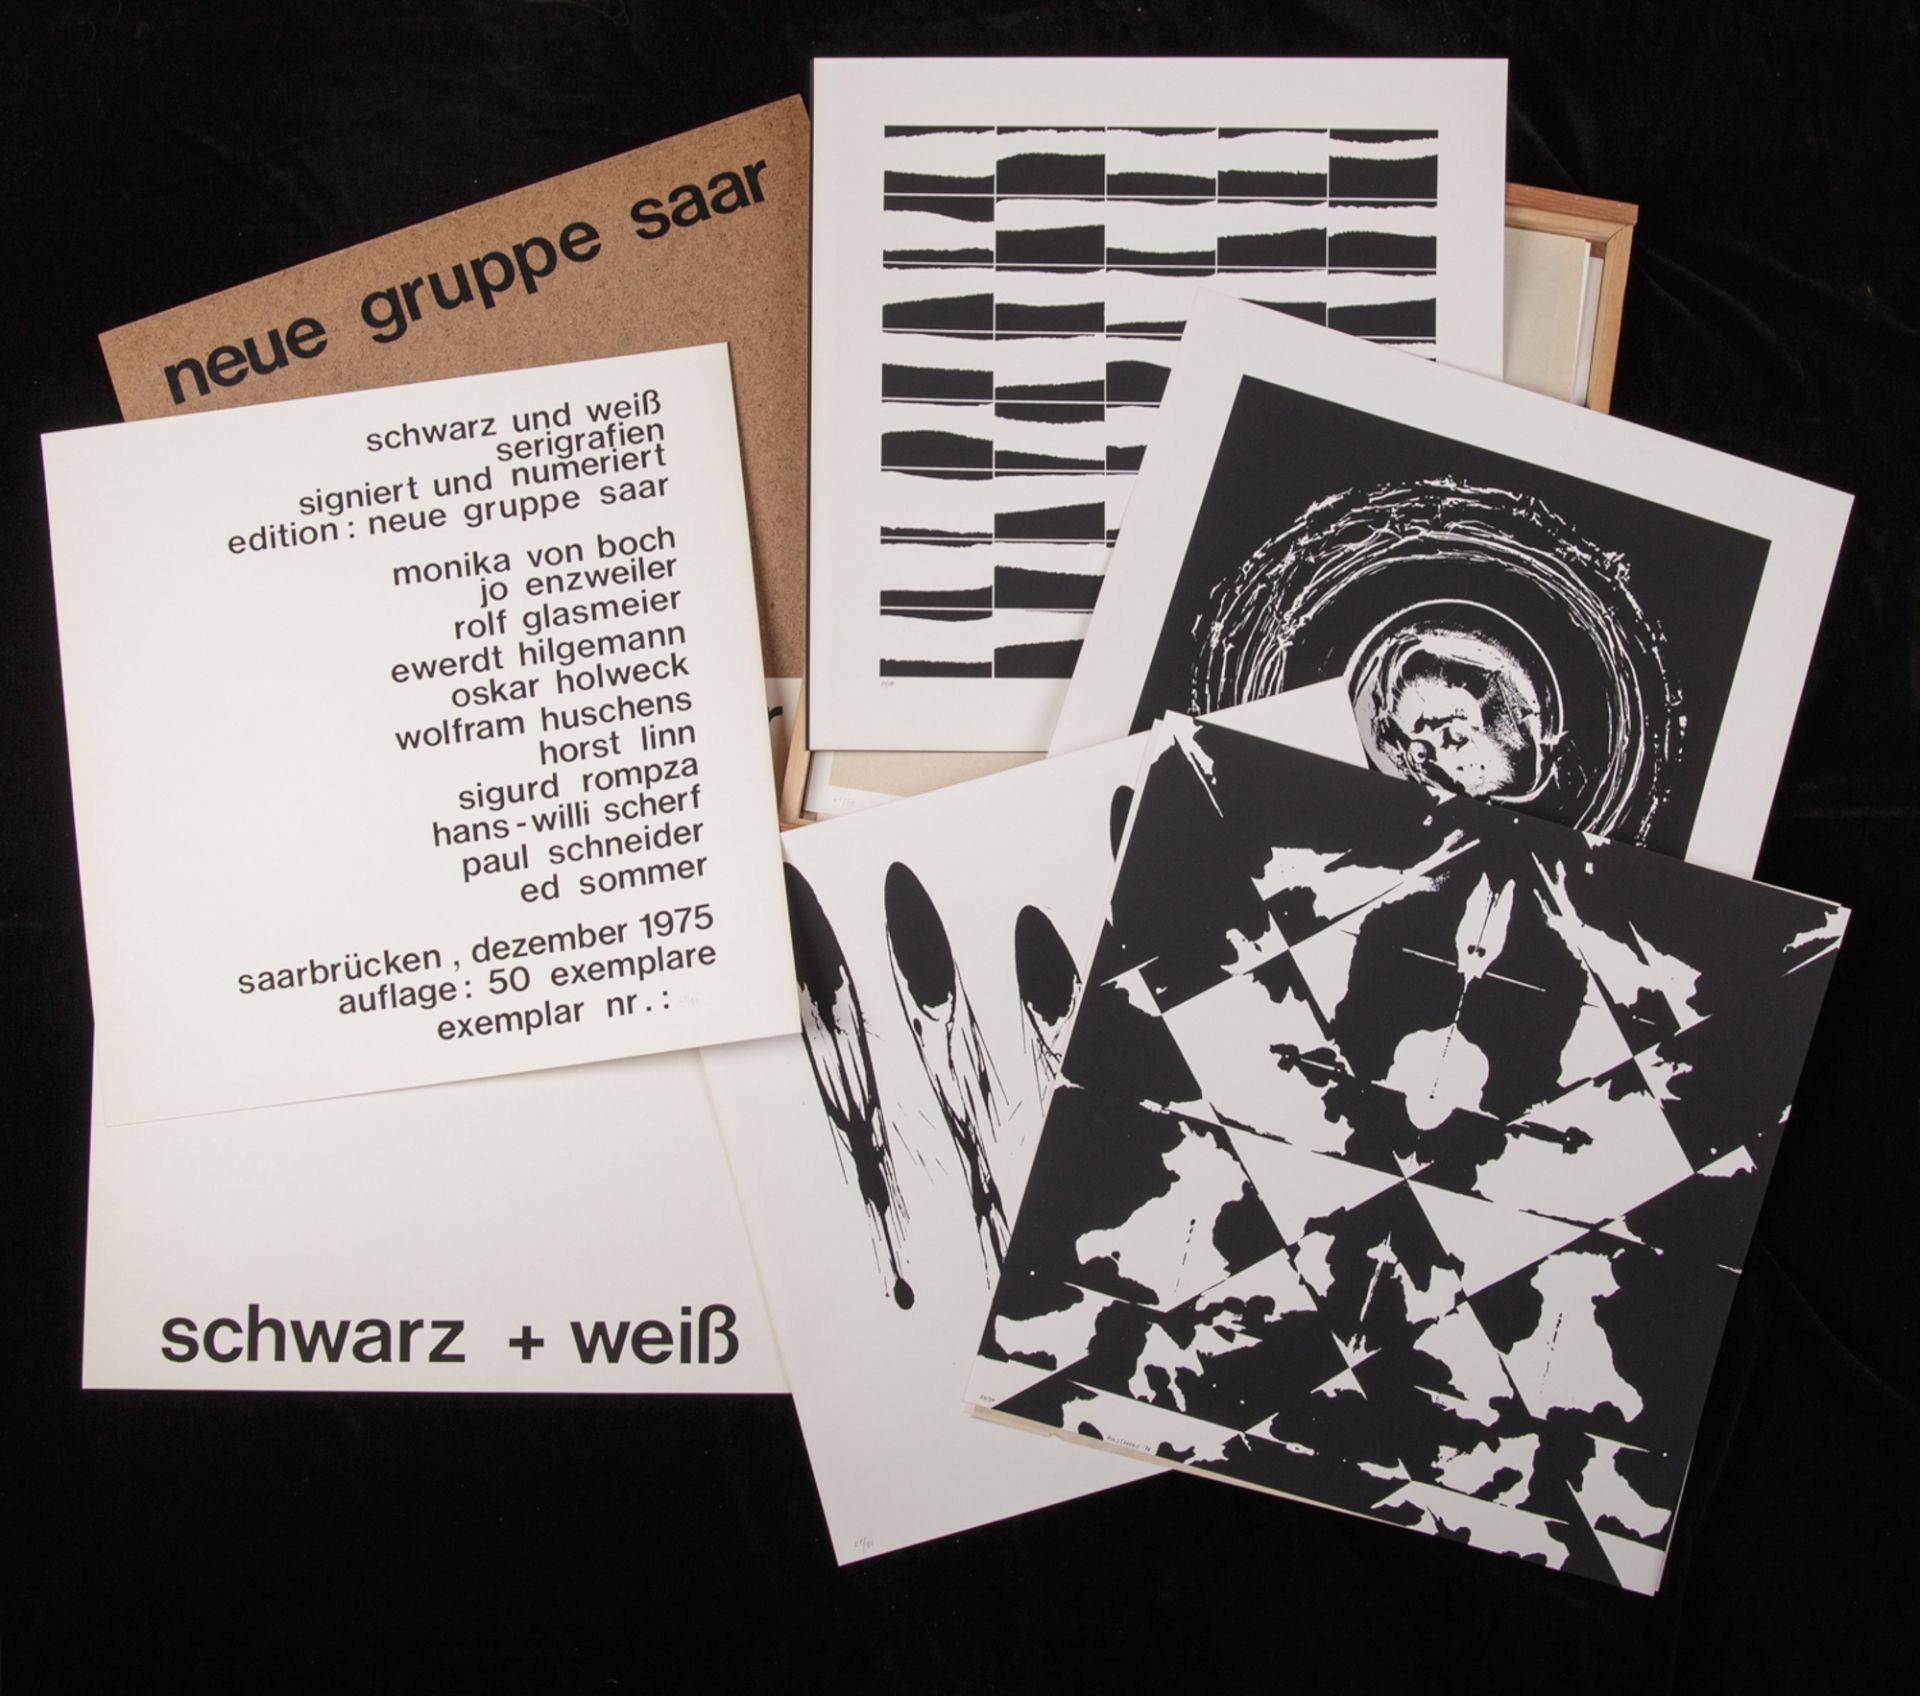 neue gruppe saar: schwarz + weiß, 1975 - Image 2 of 6